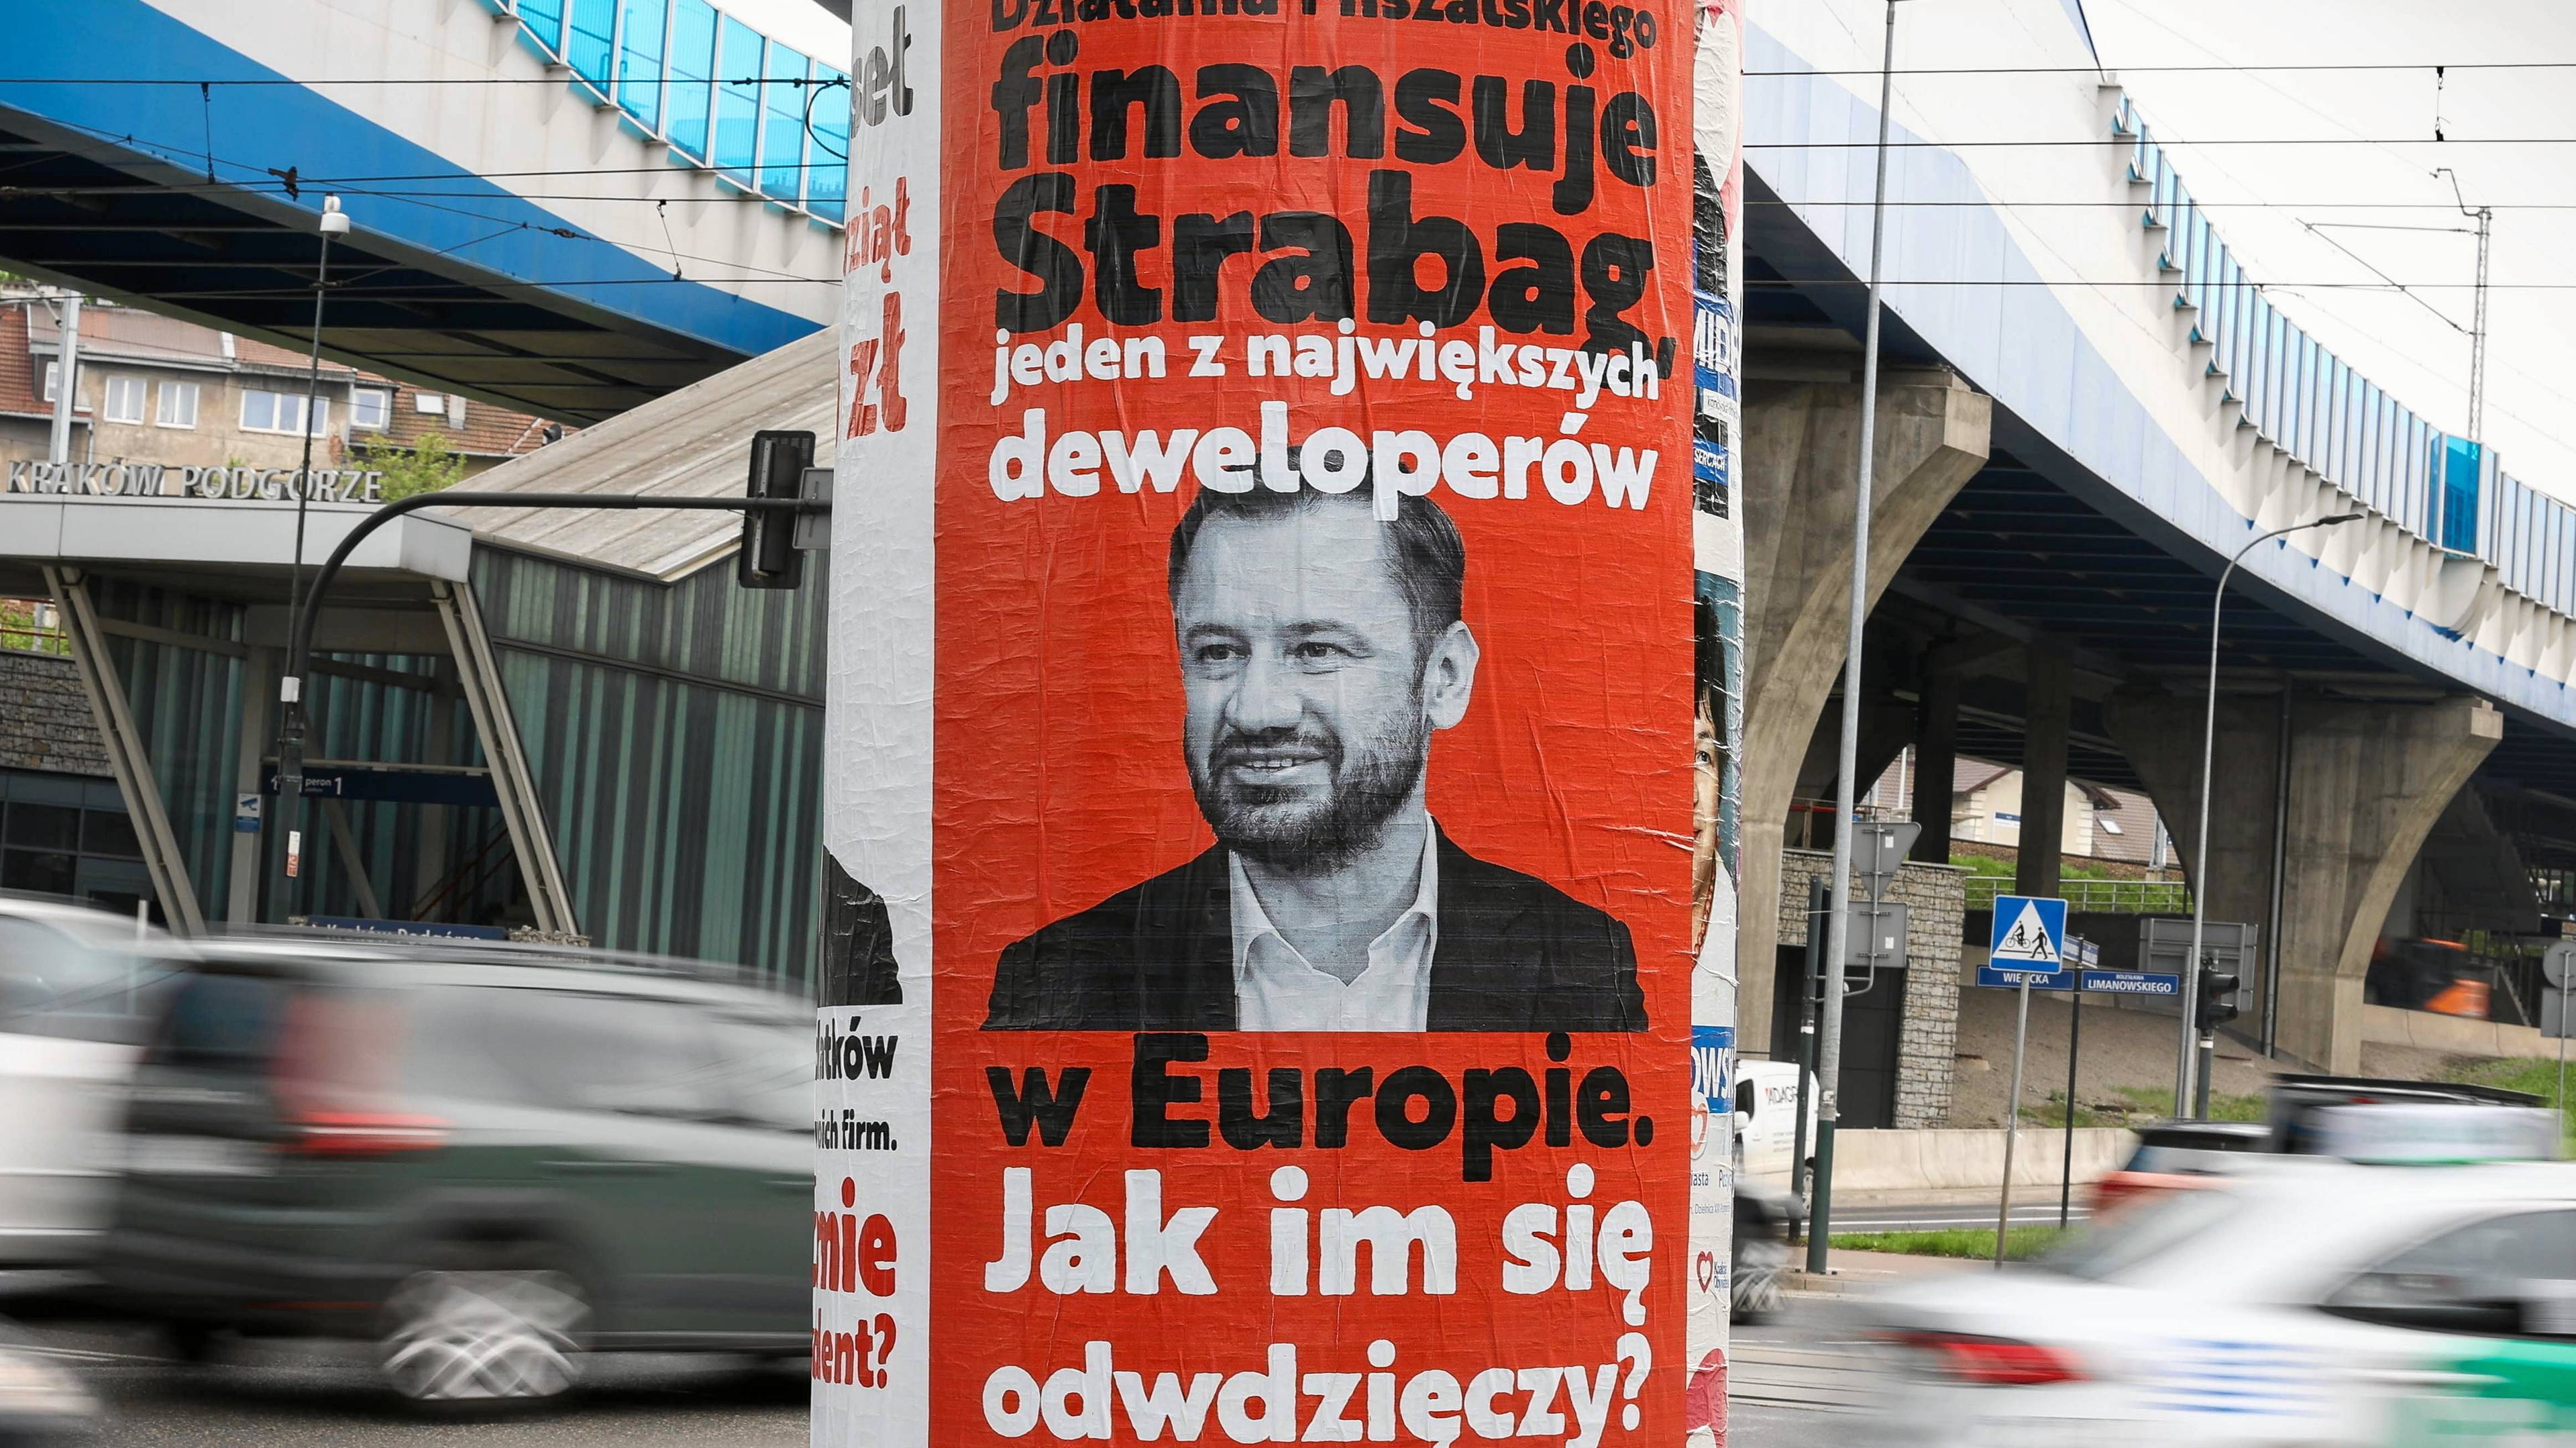 okrąglak, na którym naklejony jest plakat z twarzą Miszalskiego i hasłem o sponsorowaniu jego działań przez deweloperów